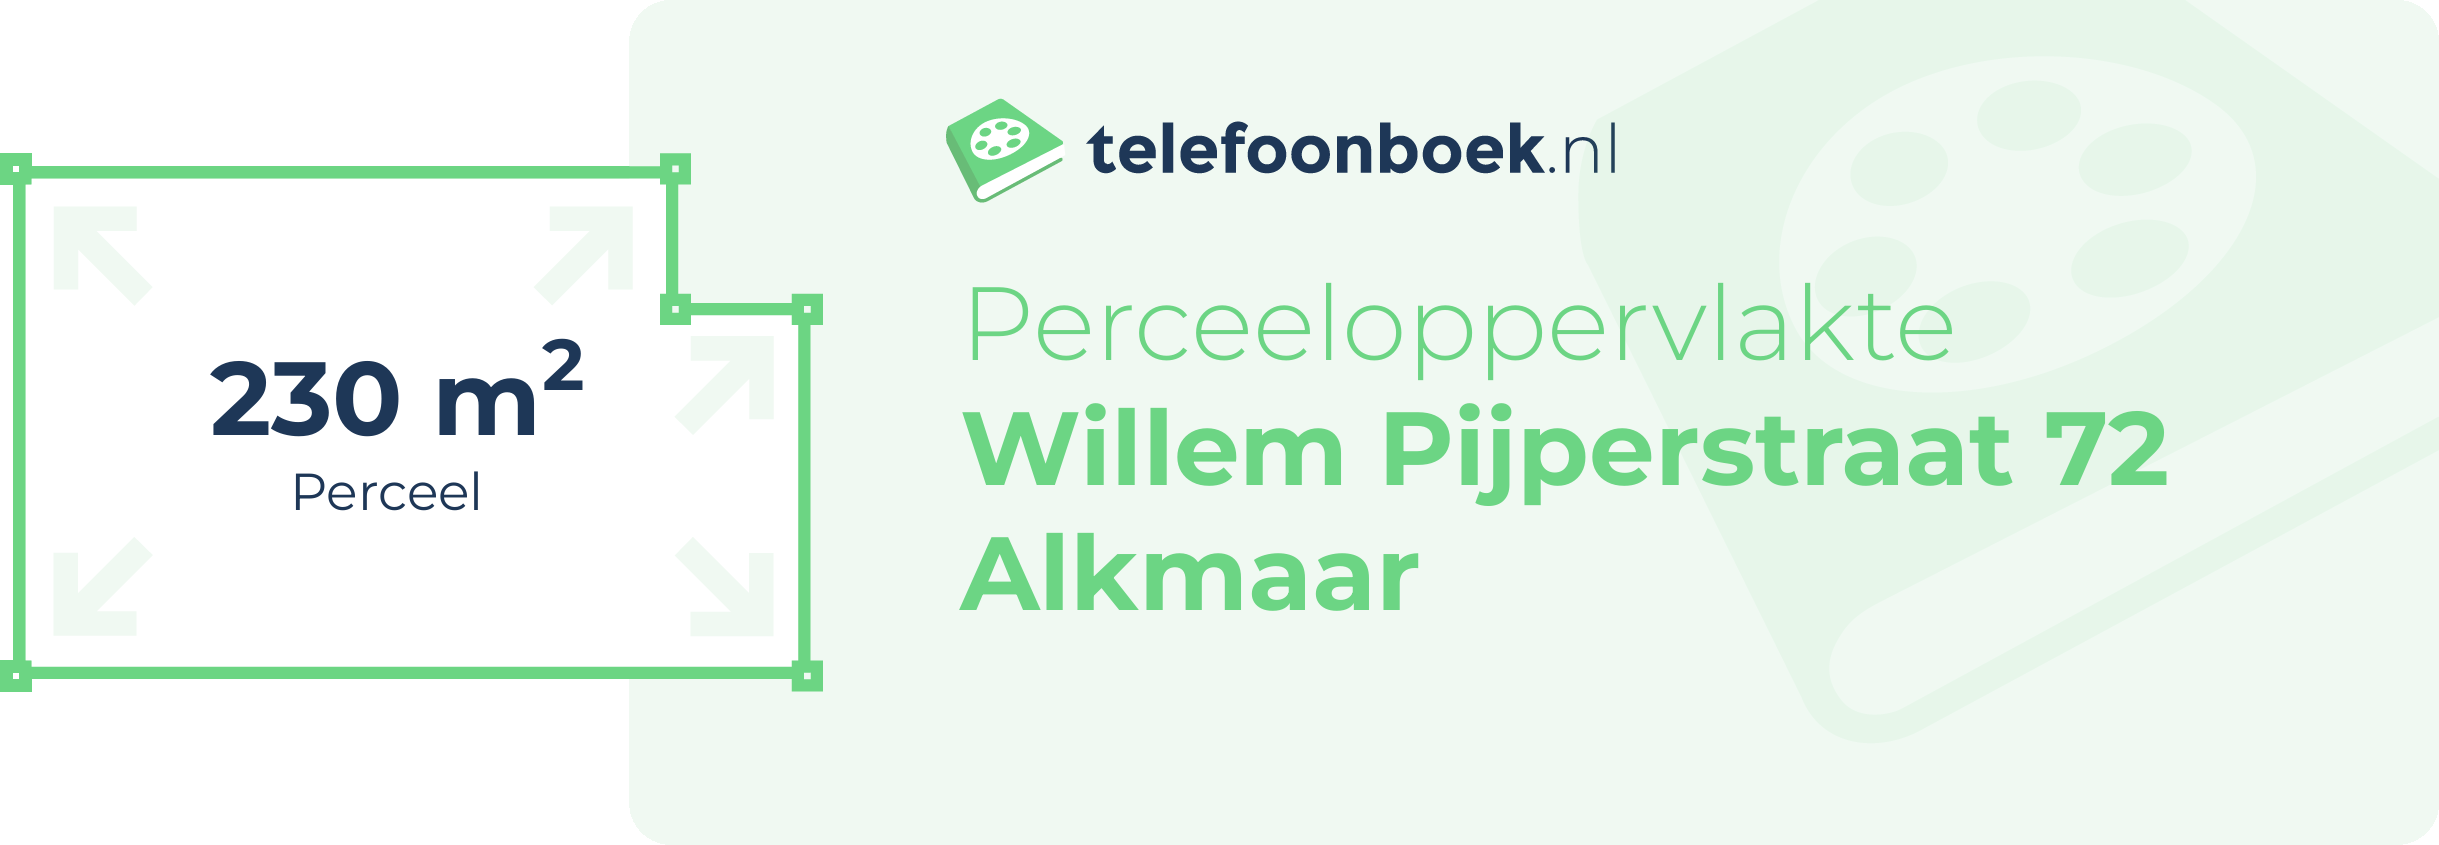 Perceeloppervlakte Willem Pijperstraat 72 Alkmaar